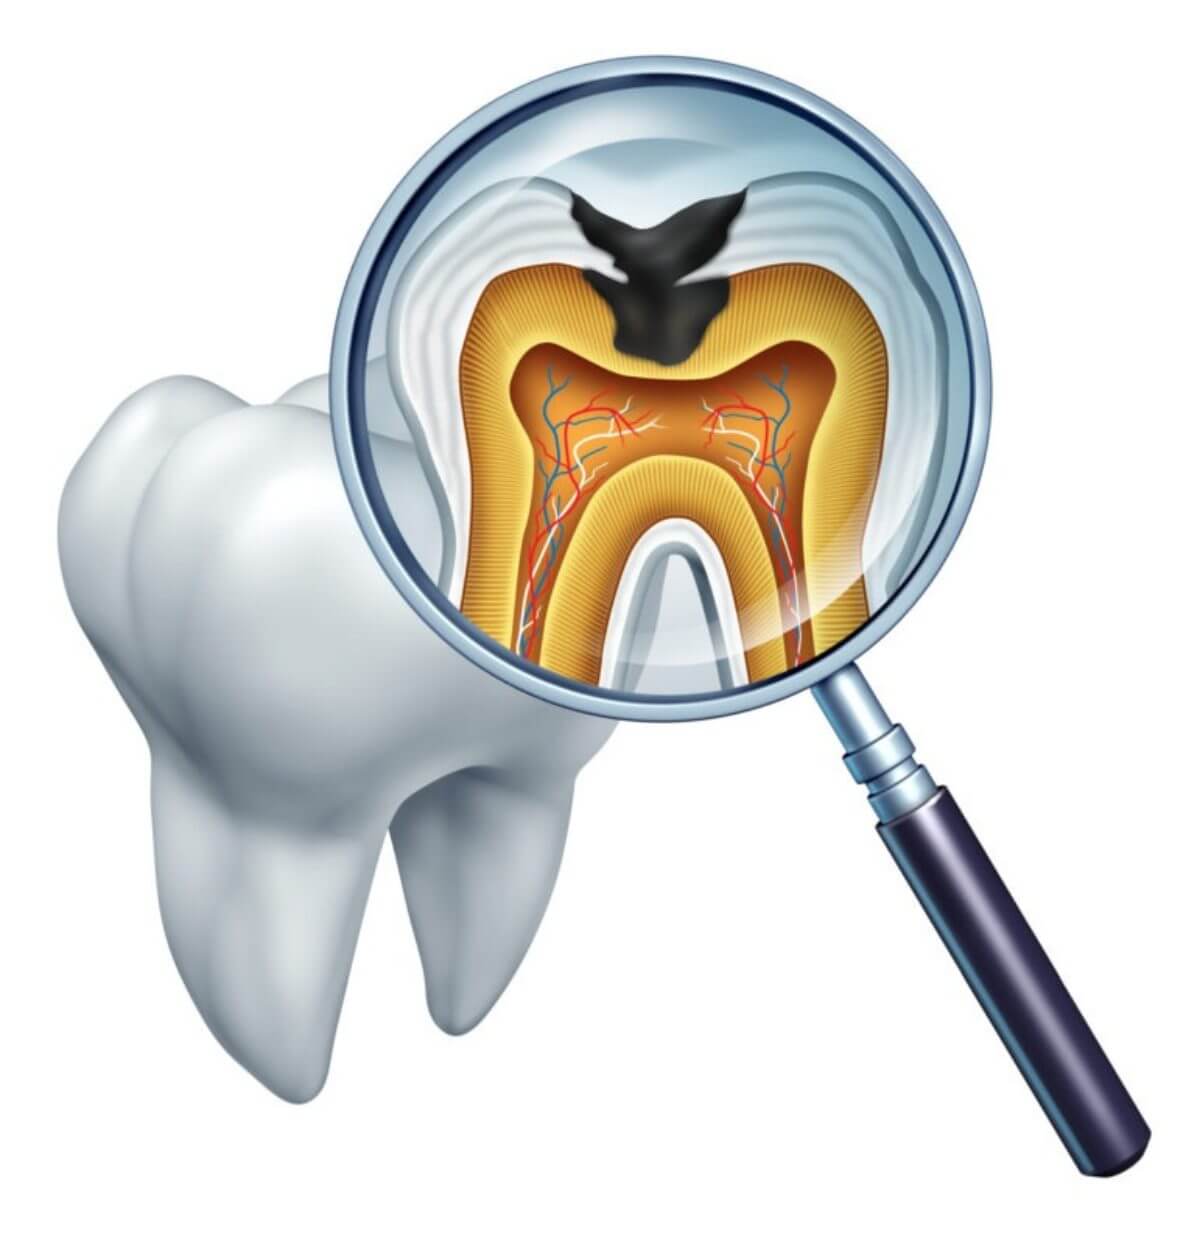 برای جلوگیری از پوسیدگی دندان چه کنیم